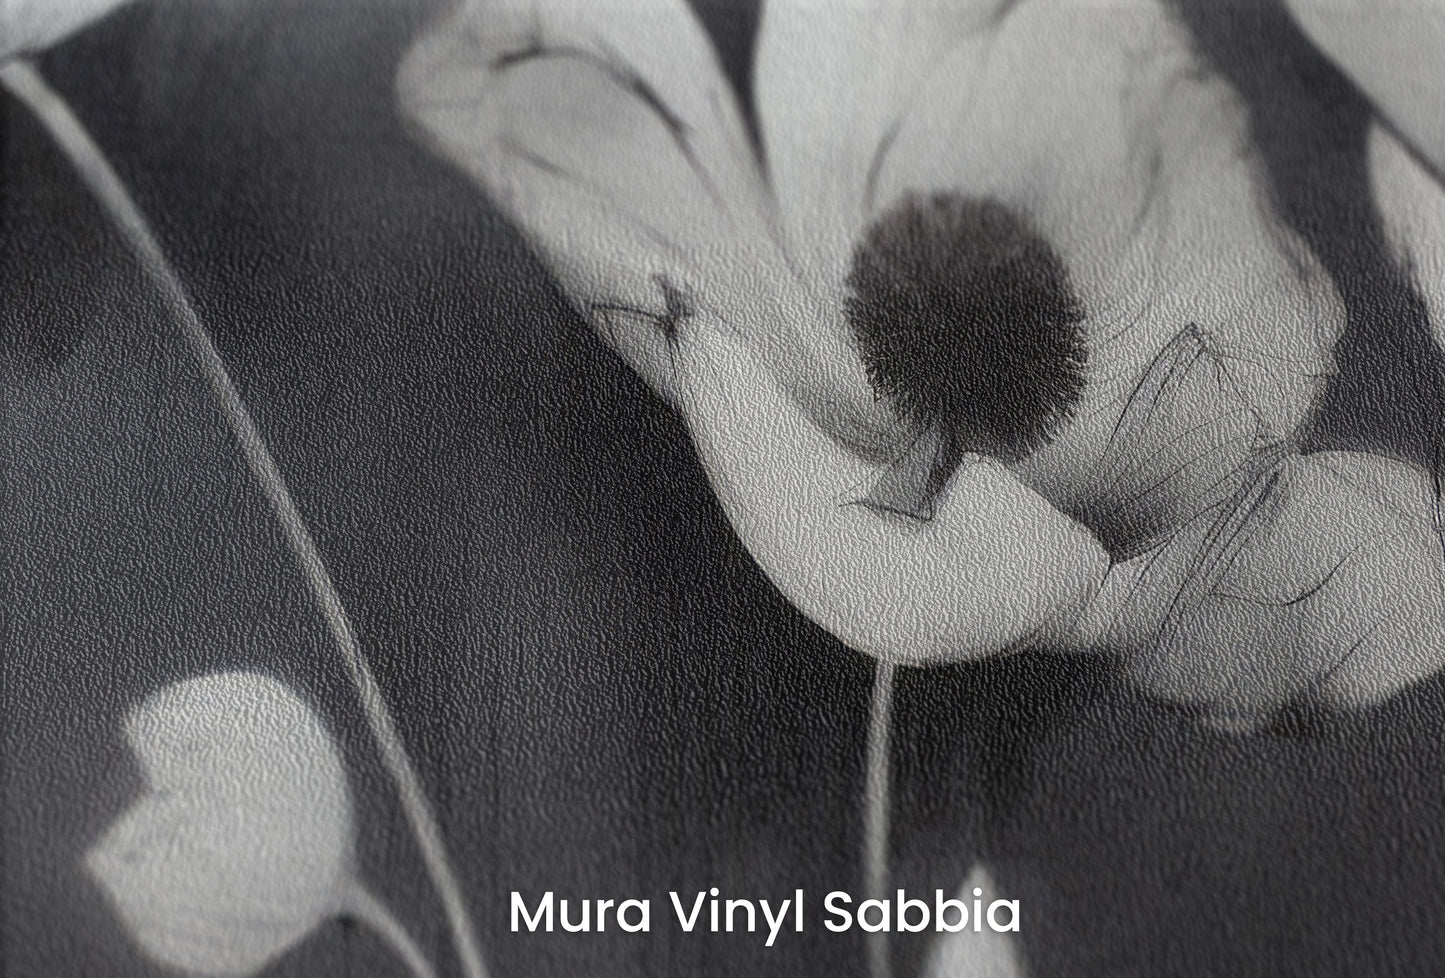 Zbliżenie na artystyczną fototapetę o nazwie SHADOWED FLORA na podłożu Mura Vinyl Sabbia struktura grubego ziarna piasku.